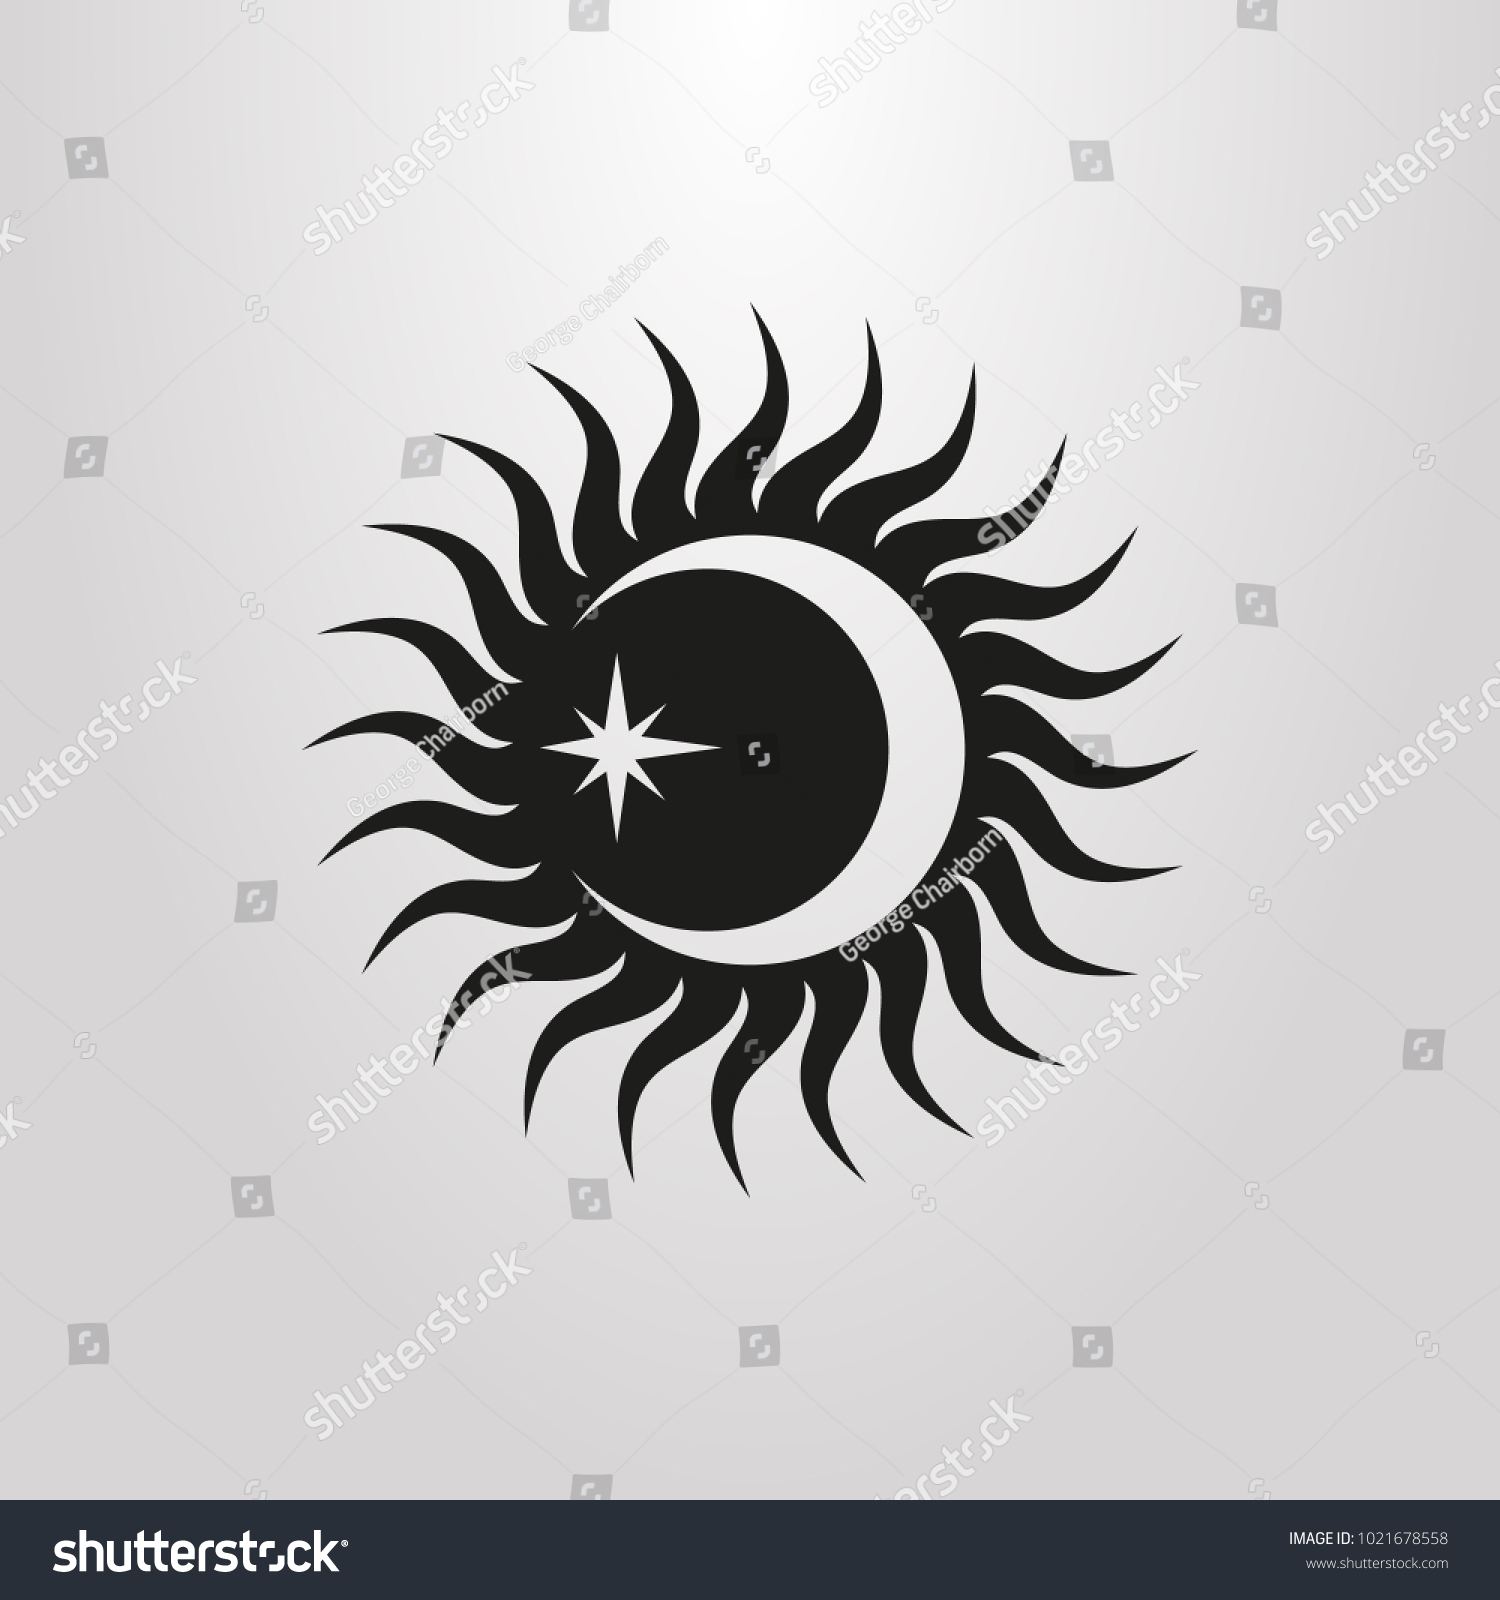 太陽 月 星の白黒の単純なベクター画像シンボル のベクター画像素材 ロイヤリティフリー